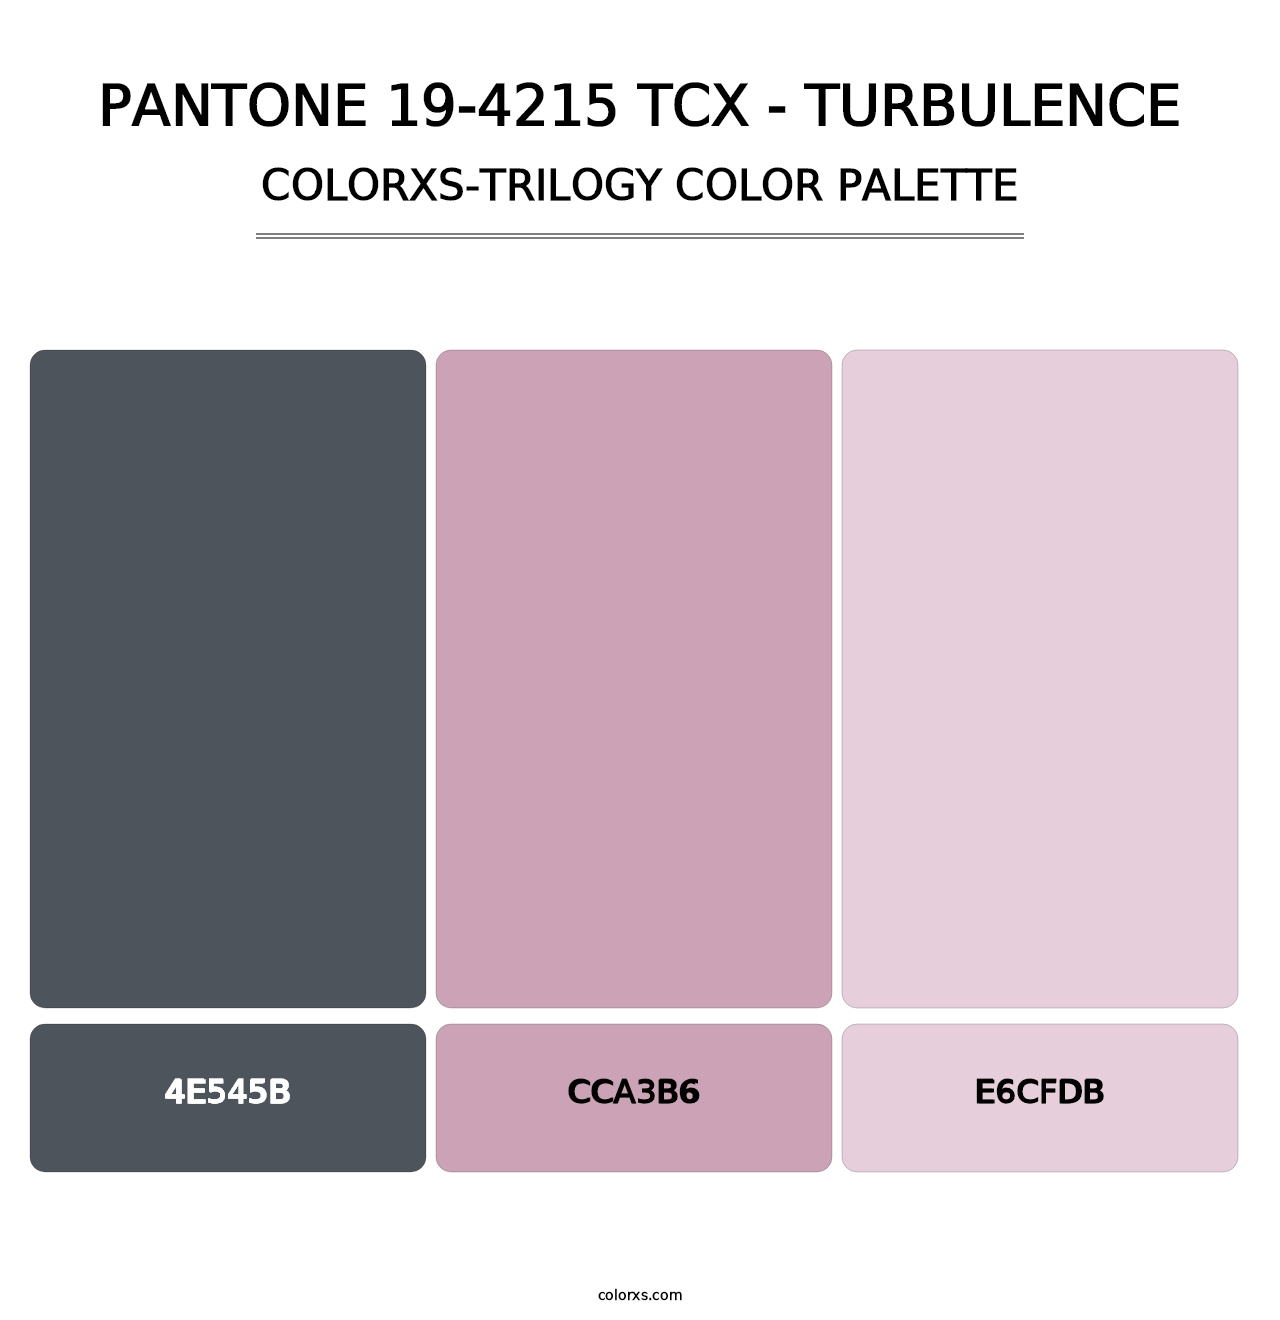 PANTONE 19-4215 TCX - Turbulence - Colorxs Trilogy Palette